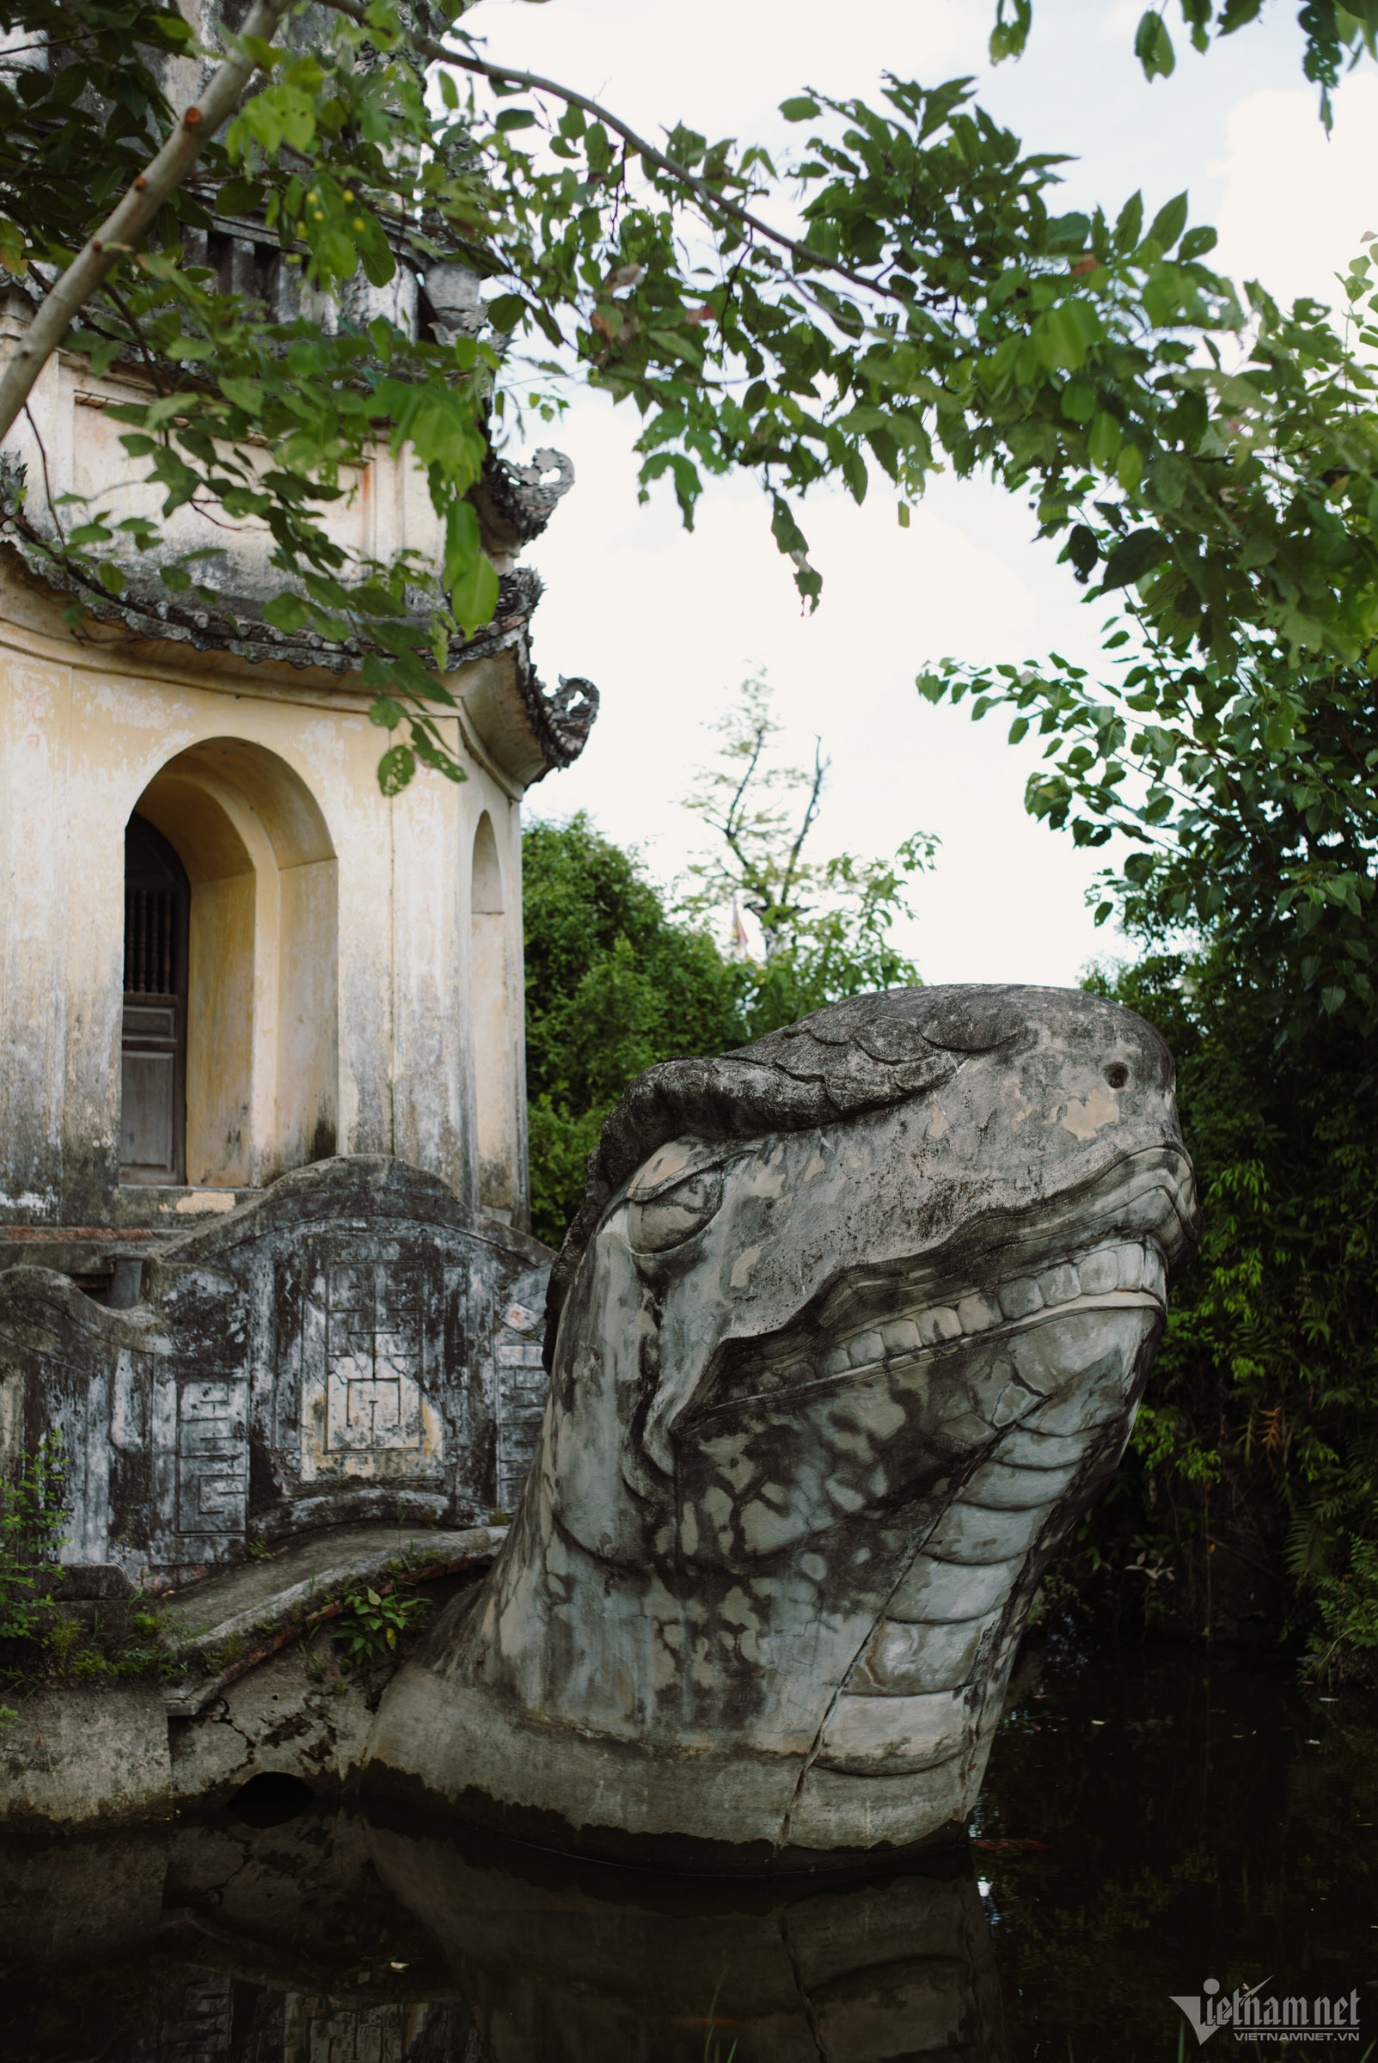 Ngọn tháp 'chín tầng trời' trong ngôi chùa thiêng nổi tiếng Nam Định - 4